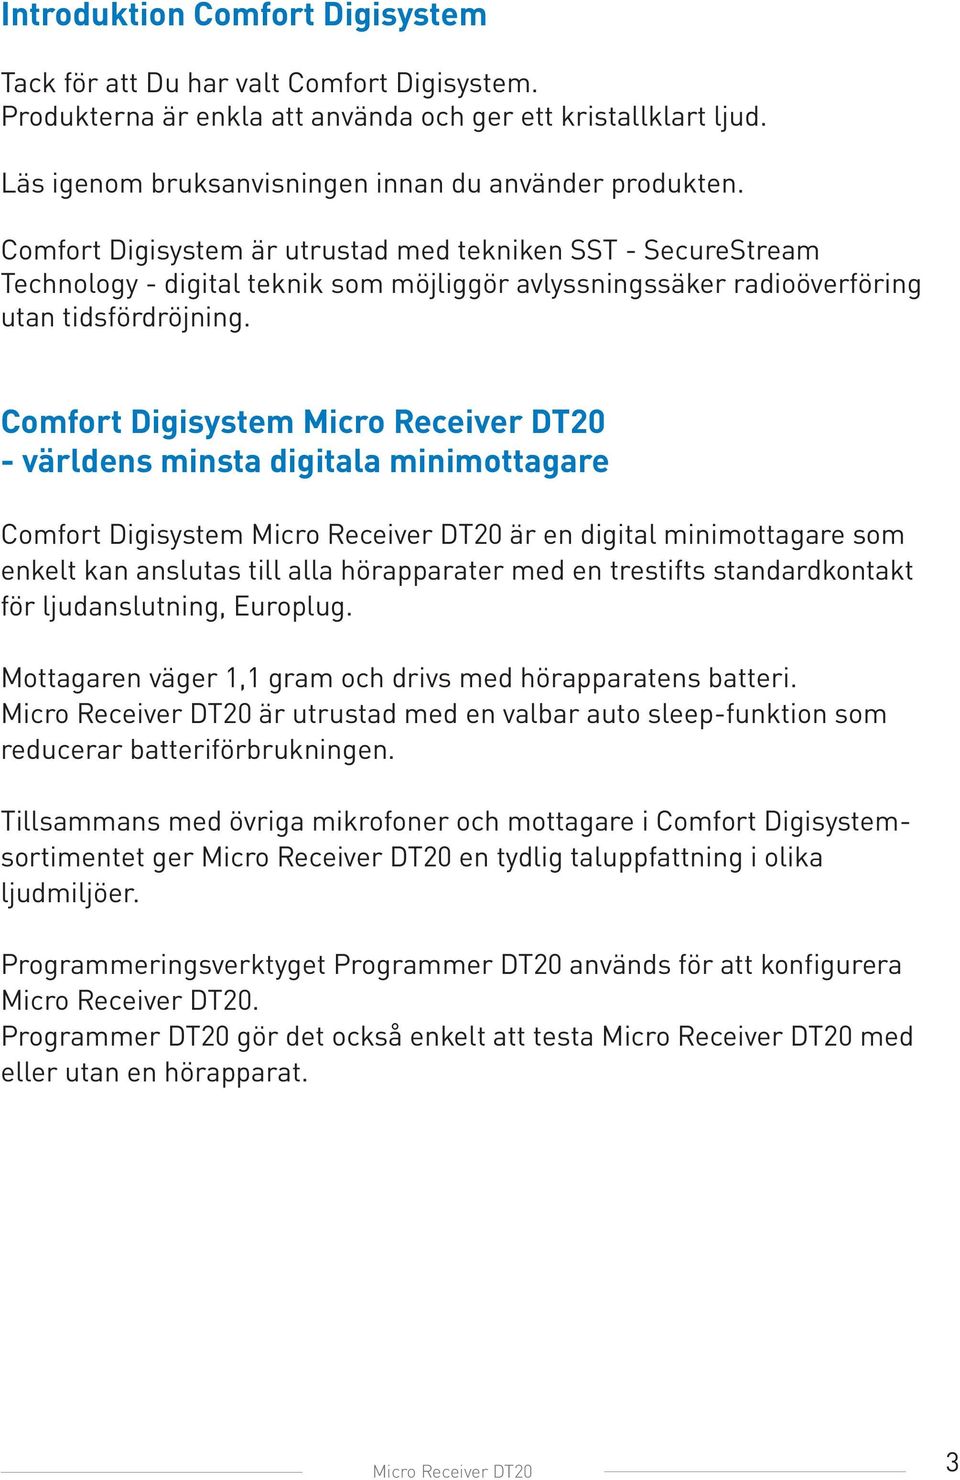 Comfort Digisystem Micro Receiver DT20 - världens minsta digitala minimottagare Comfort Digisystem Micro Receiver DT20 är en digital minimottagare som enkelt kan anslutas till alla hörapparater med